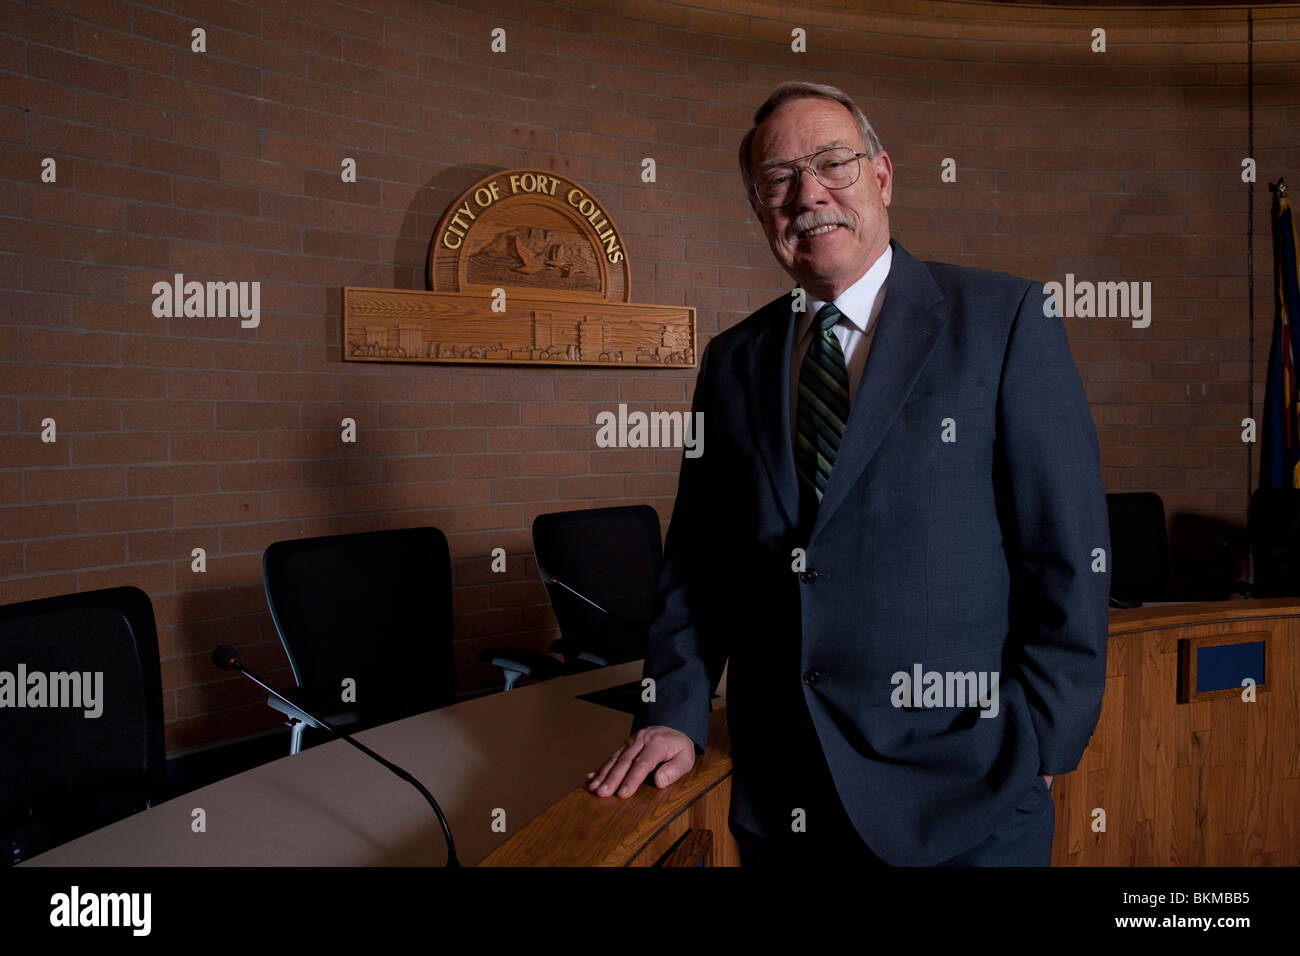 Porträt der Stadt von Fort Collins, Colorado Bürgermeister Doug Huchinson Stockfoto